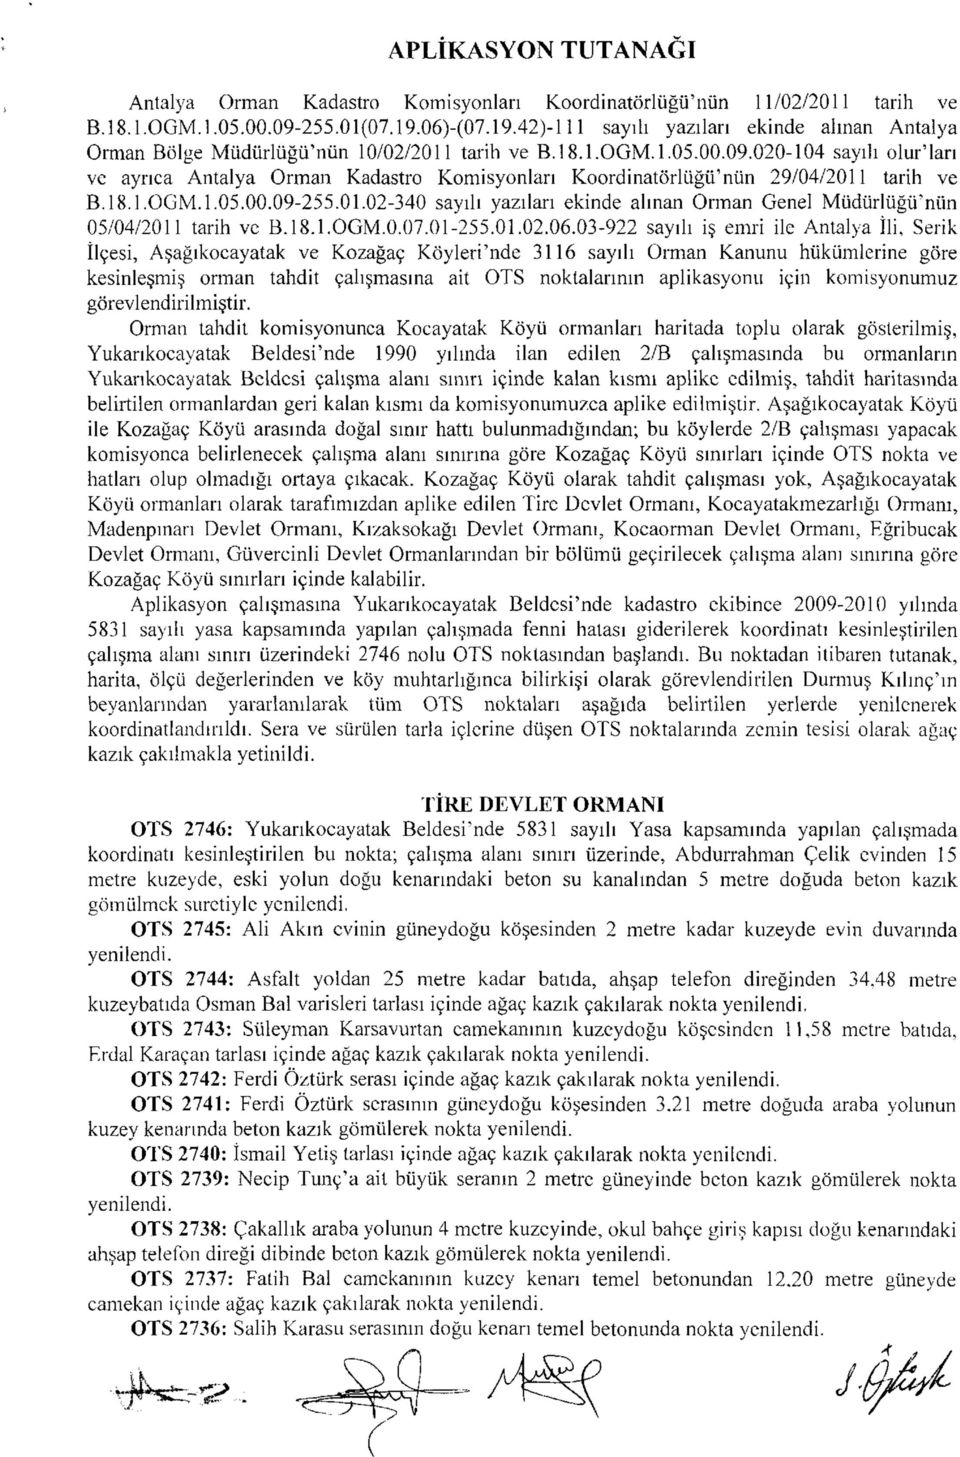 020-104 sayılı olur'ları ve ayrıca Antalya Orman Kadastro Komisyonları Koordinatörlüğü'nün 29/04/2011 tarih ve B. 18.l.OGM.l.05.00.09-255.01.02-340 sayılı yazıları ekinde alınan Orman Genel Müdürlüğü'nün 05/04/2011 tarih ve B.